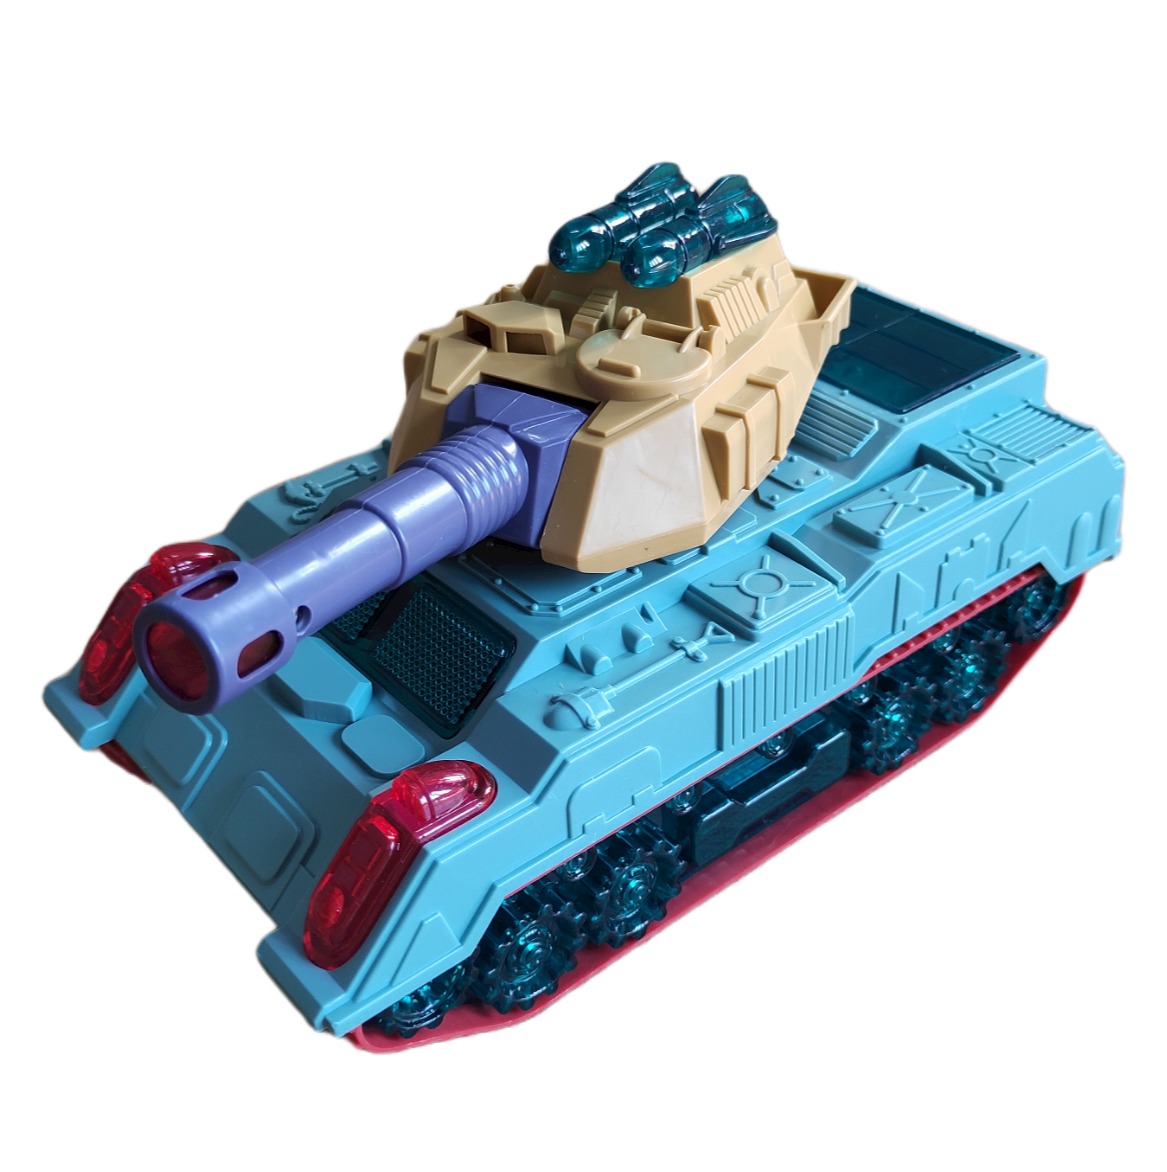 Muốn khám phá những tiện ích tuyệt vời của đồ chơi mô hình xe tăng? Cùng xem hình ảnh chi tiết để hiểu thêm về cấu trúc, phụ kiện và tính năng của mô hình xe tăng nhé!